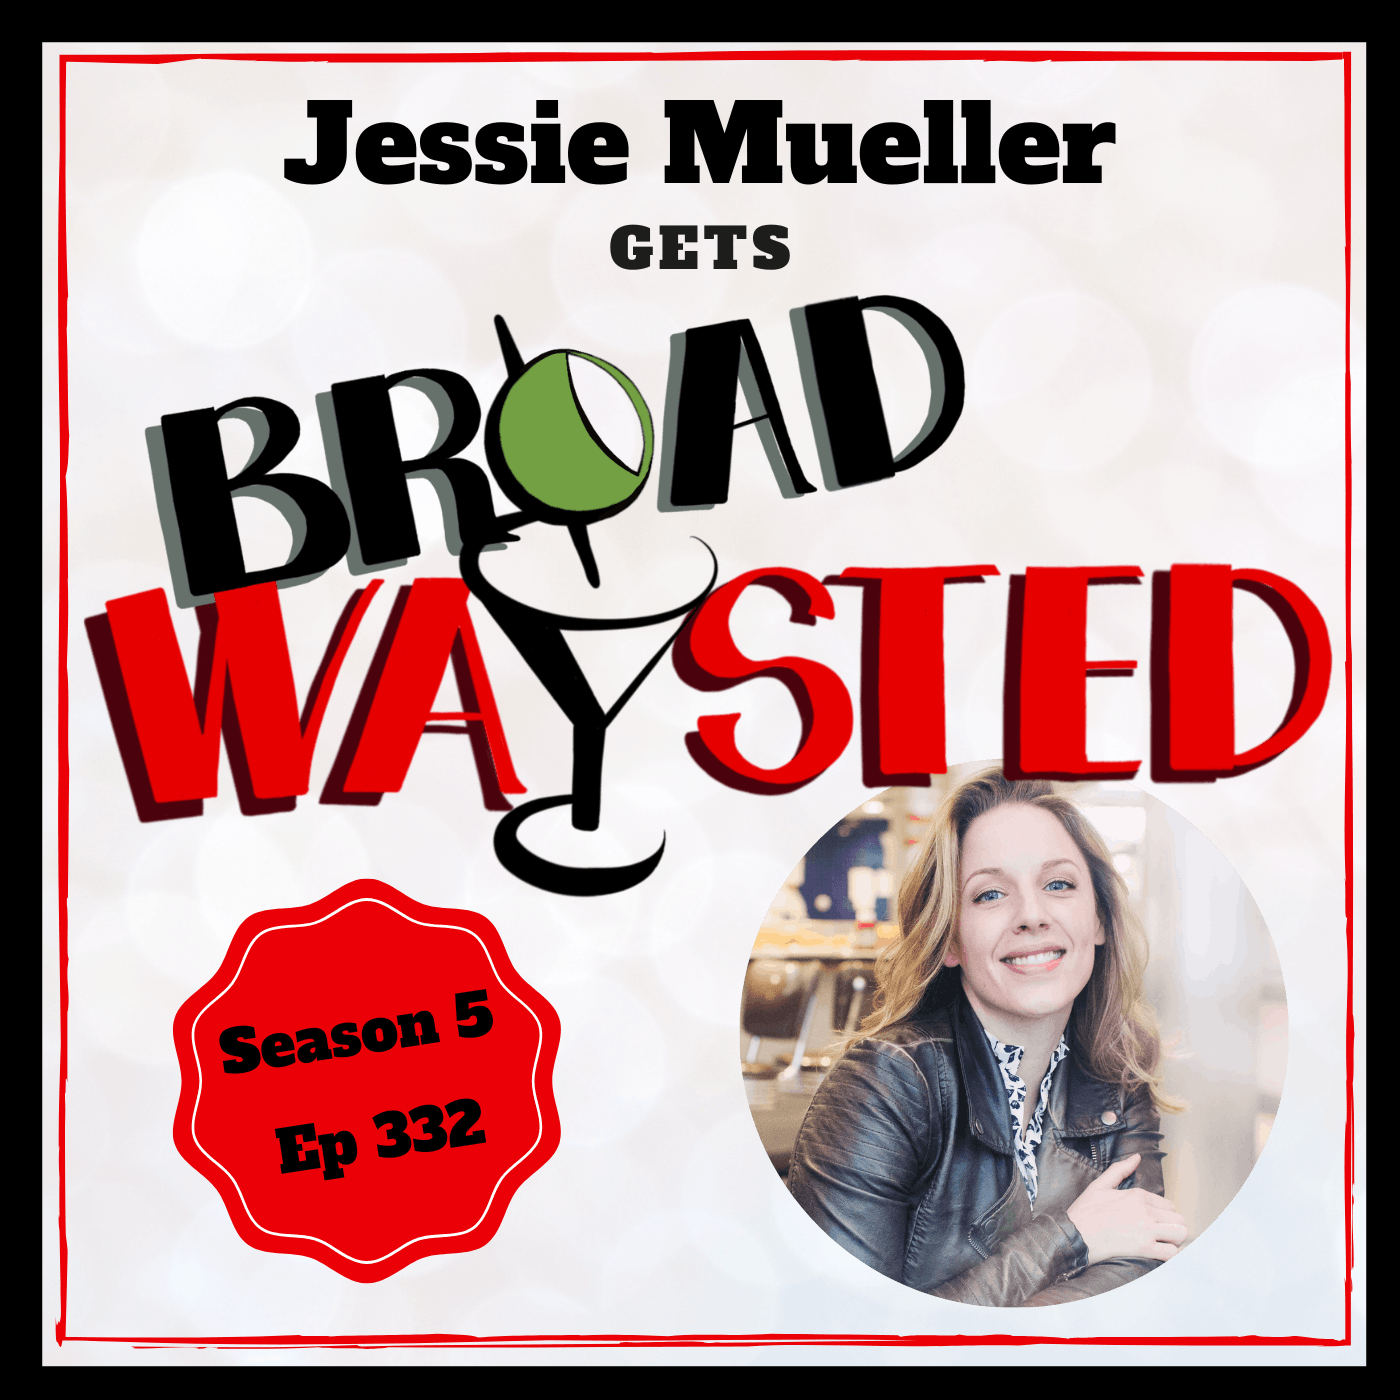 Episode 332: Jessie Mueller gets Broadwaysted!